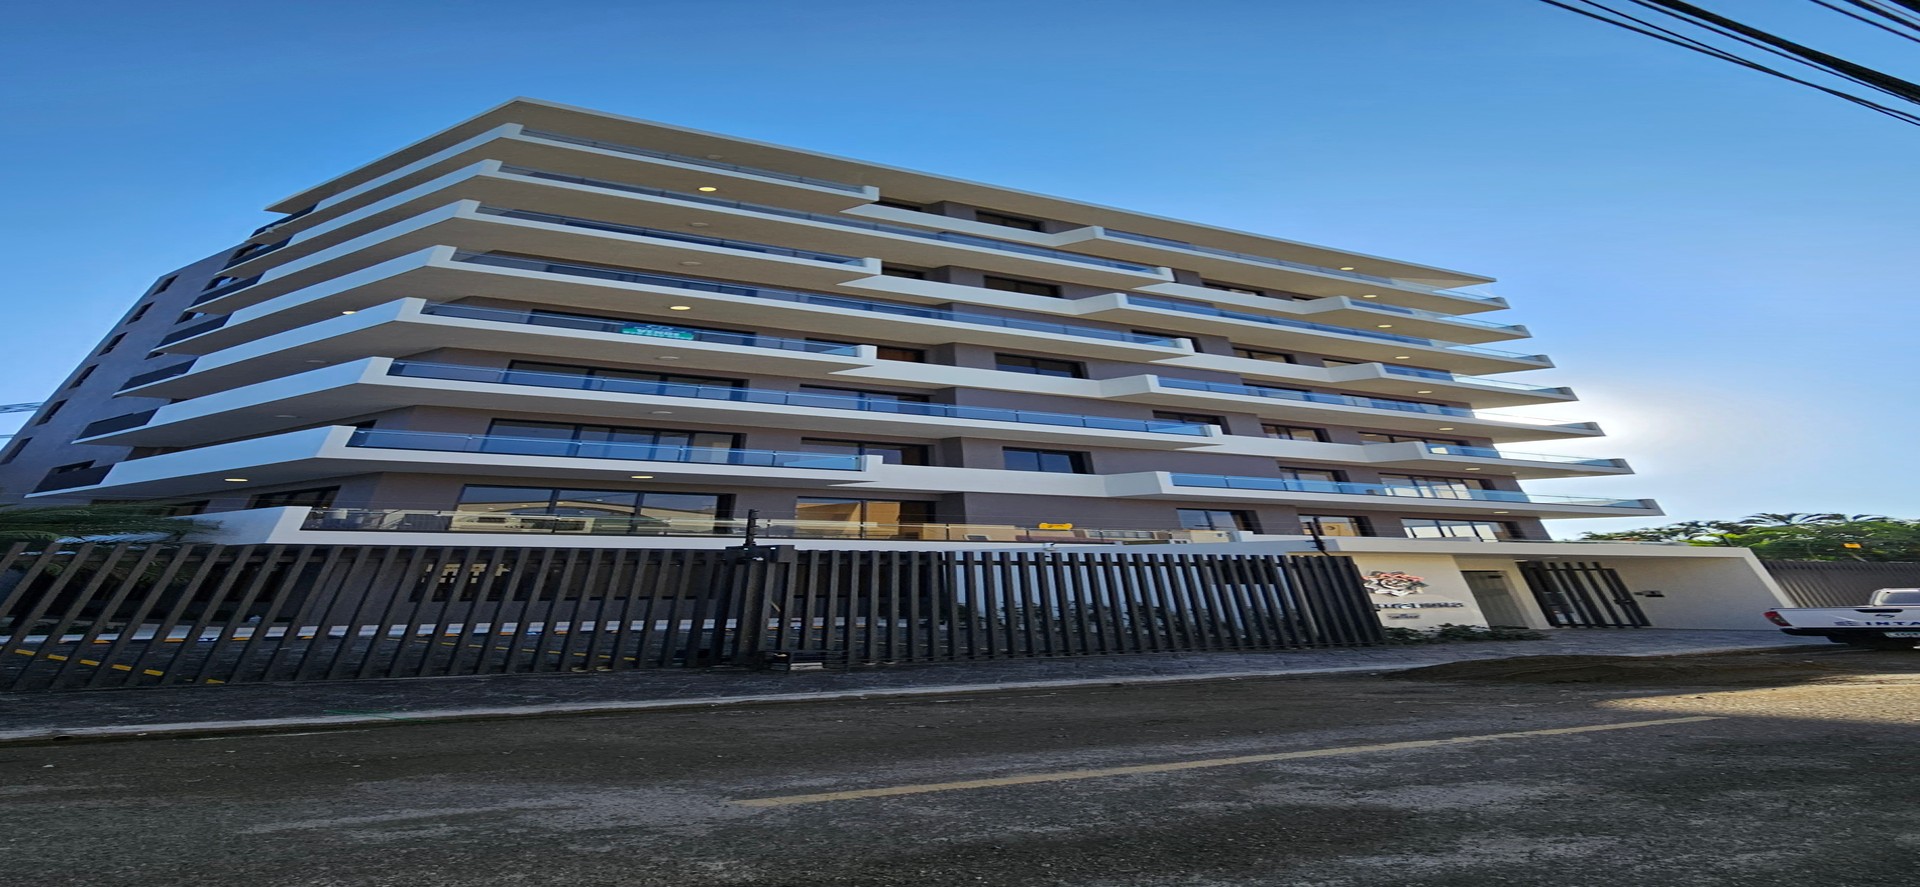 apartamentos - Apartamento nuevo en La Española -5to nivel 0